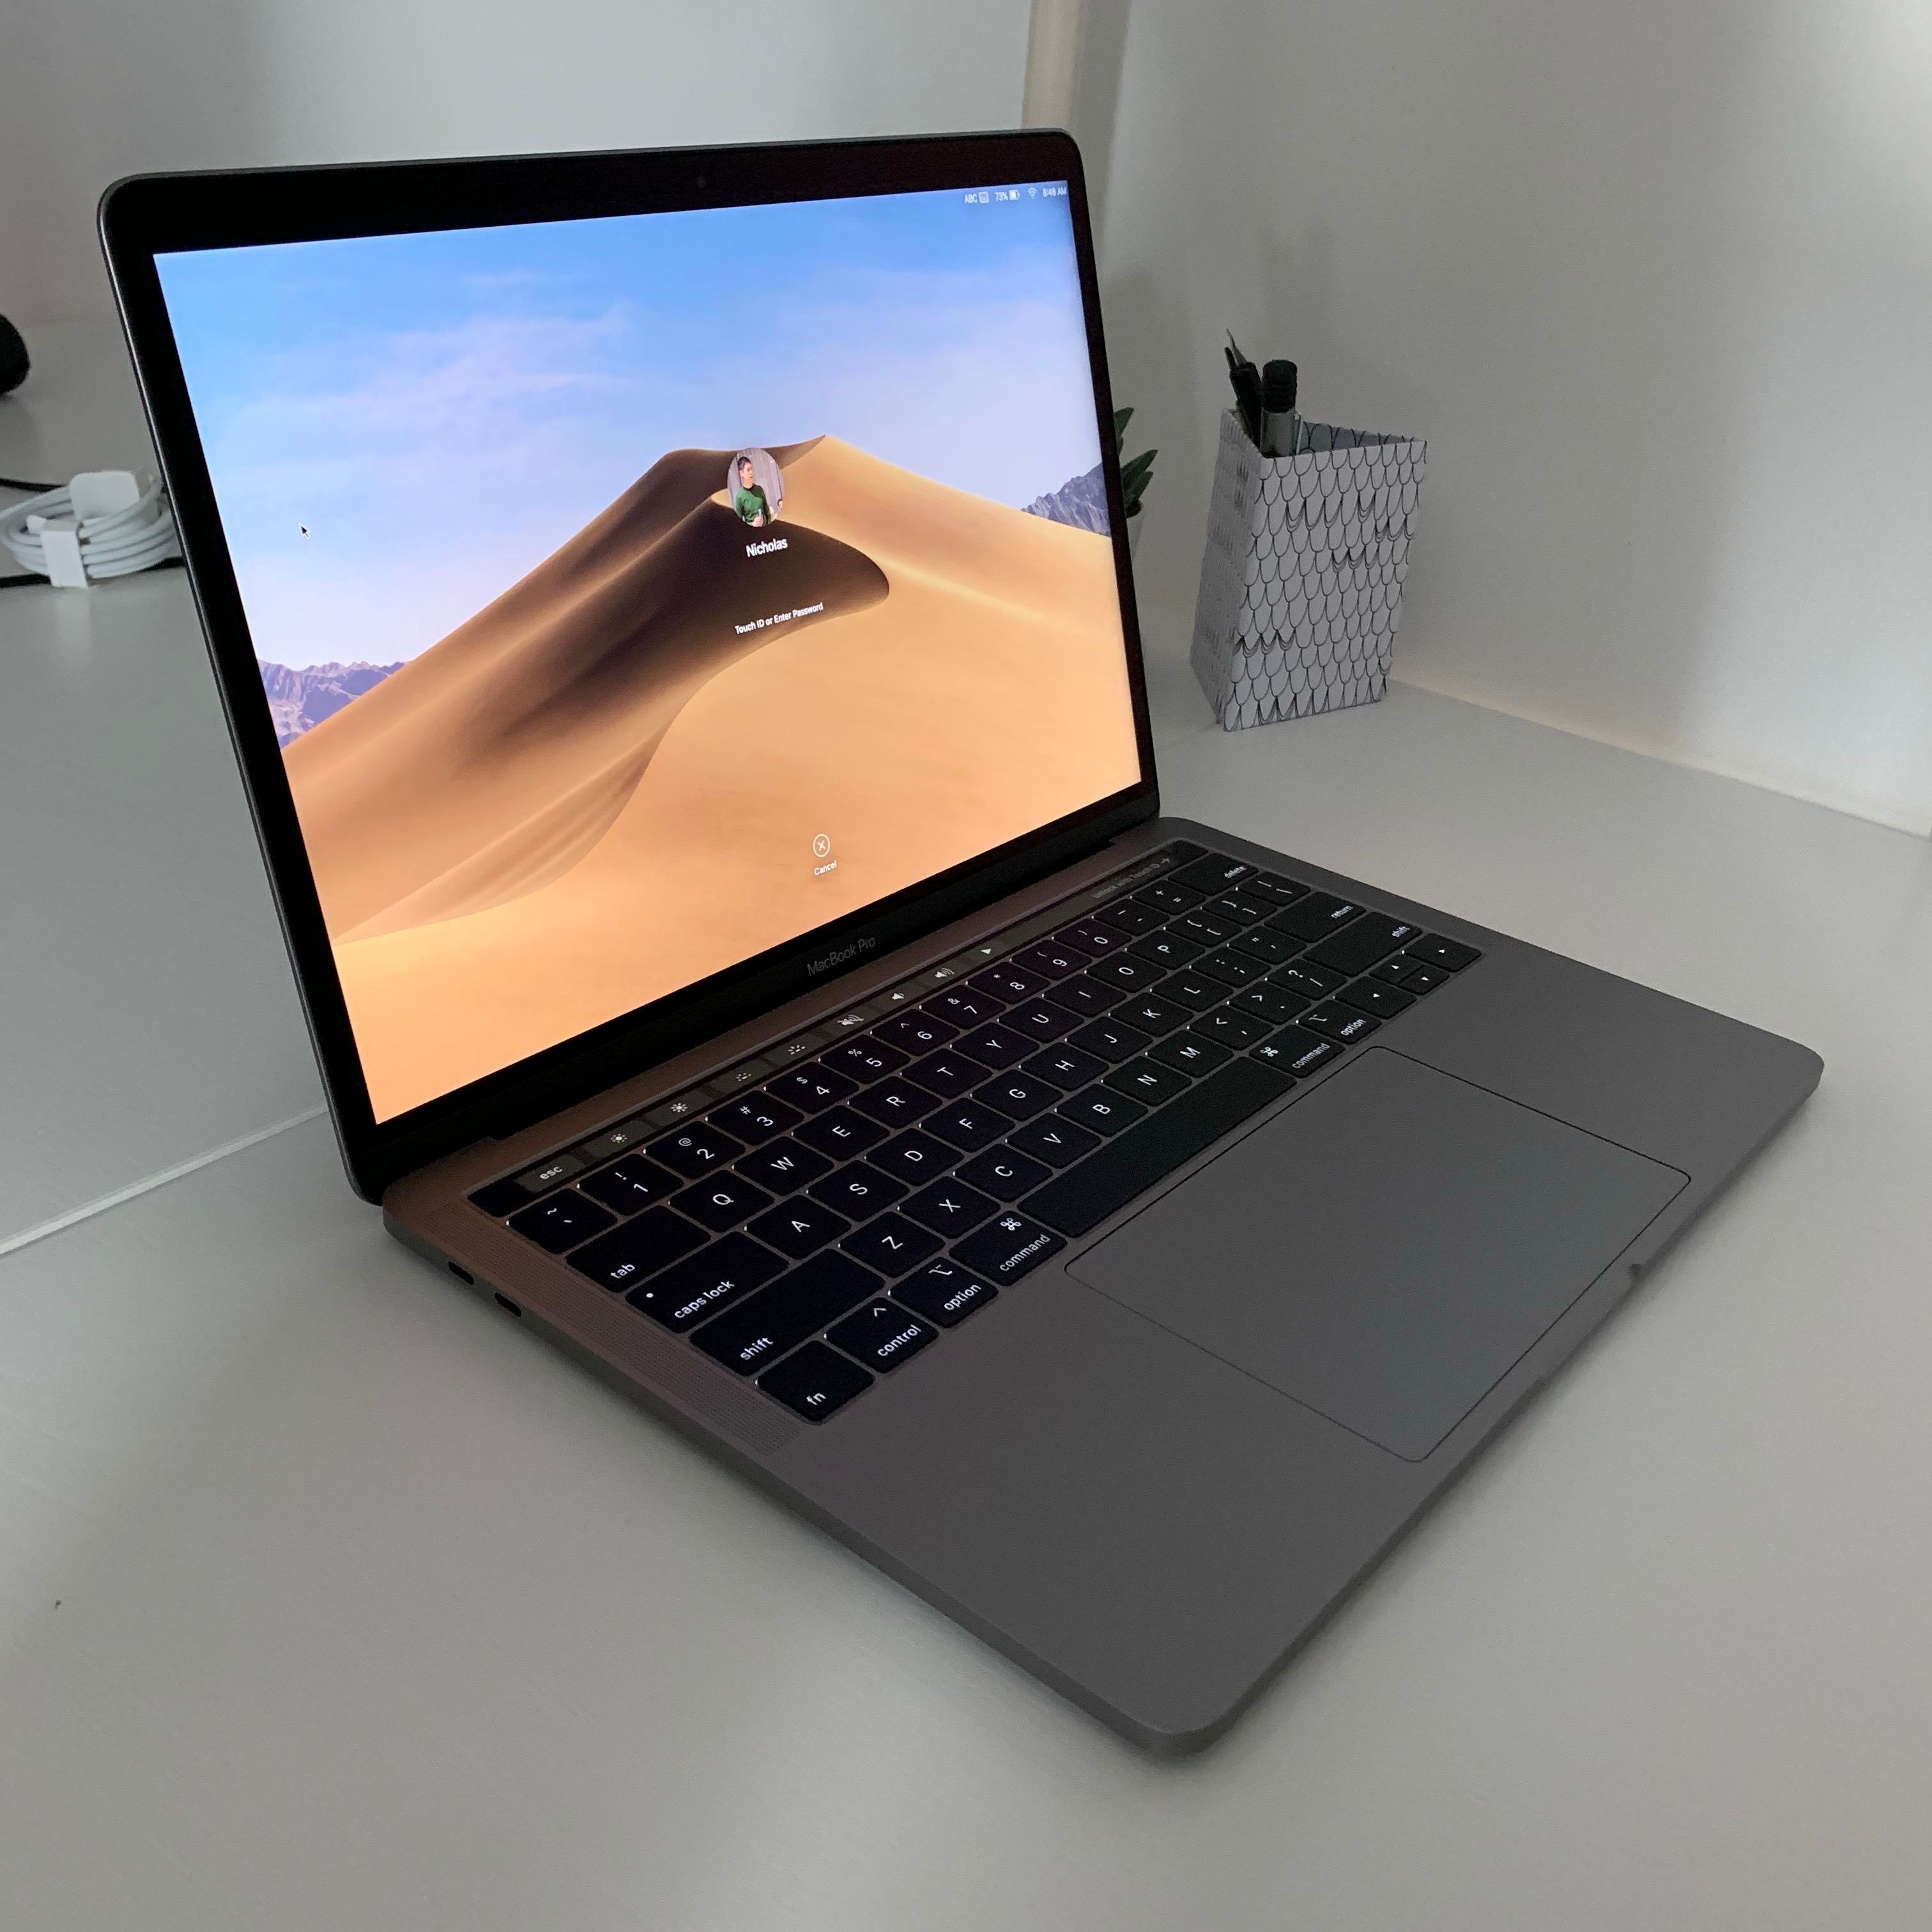 Macbook Pro 13 Inch 2018 4 Tbt3 Specs | Bruin Blog